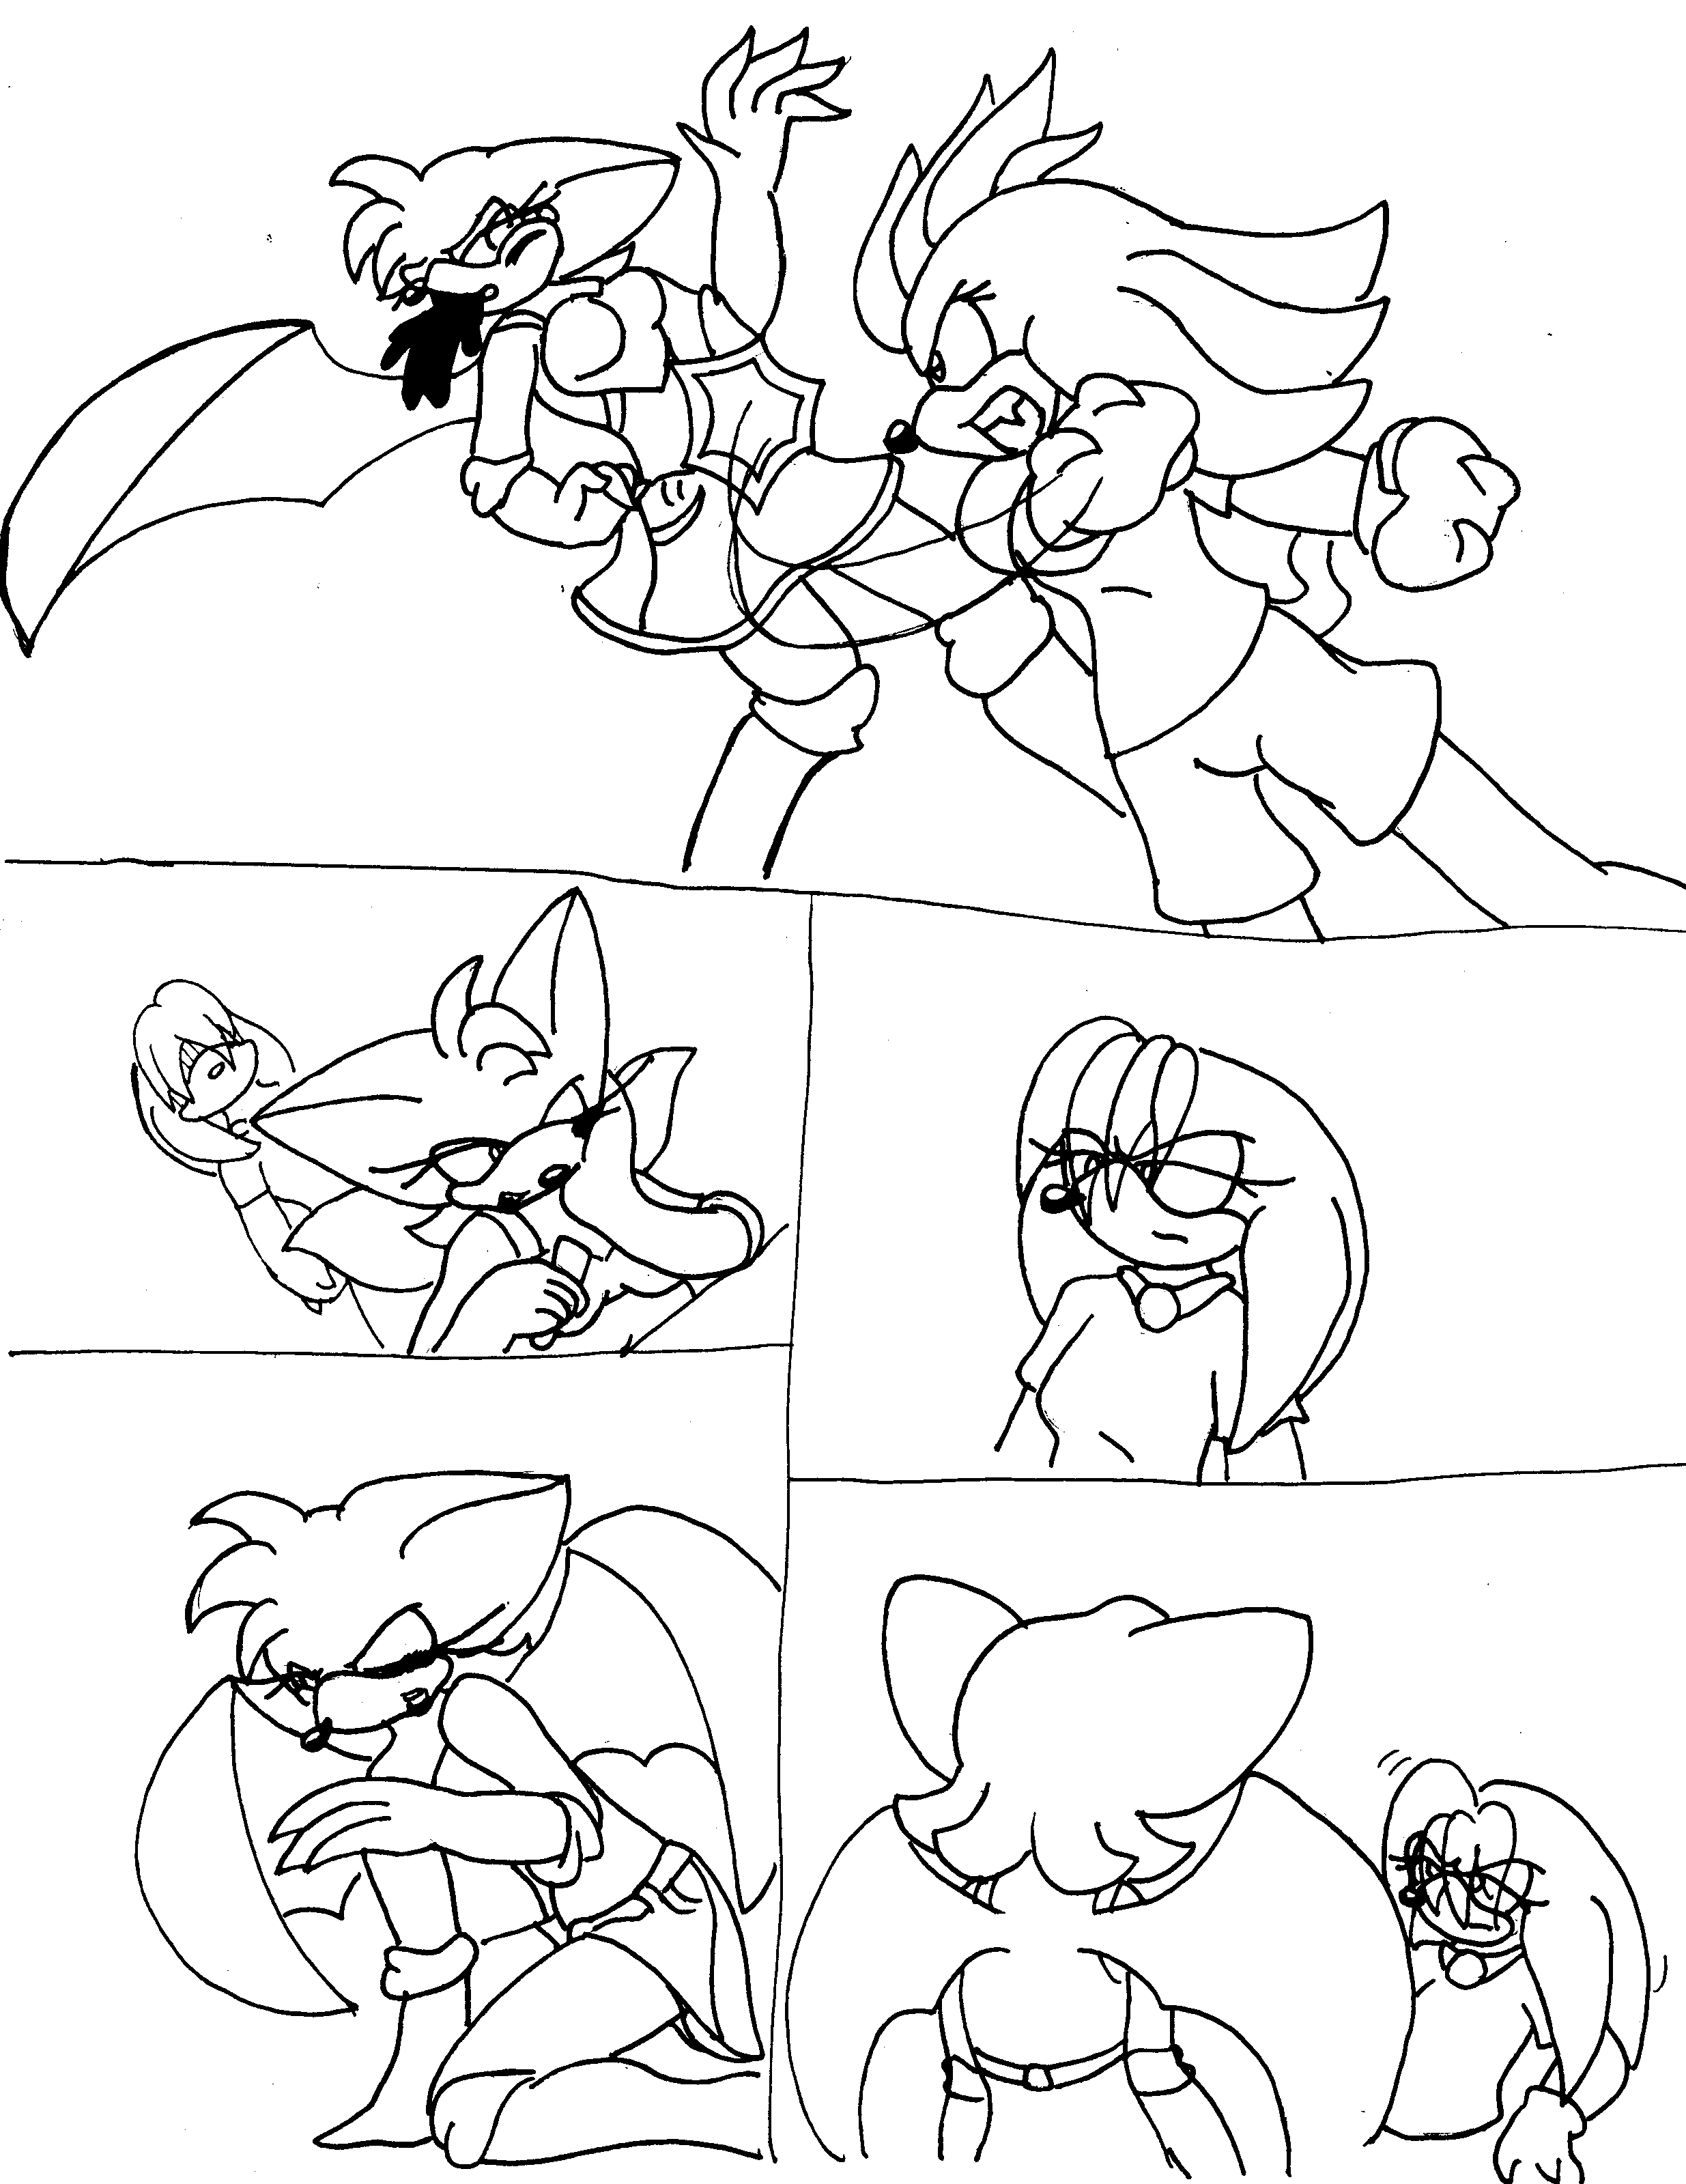 Cleo vs. Ruby by PrincessSallyAcorn